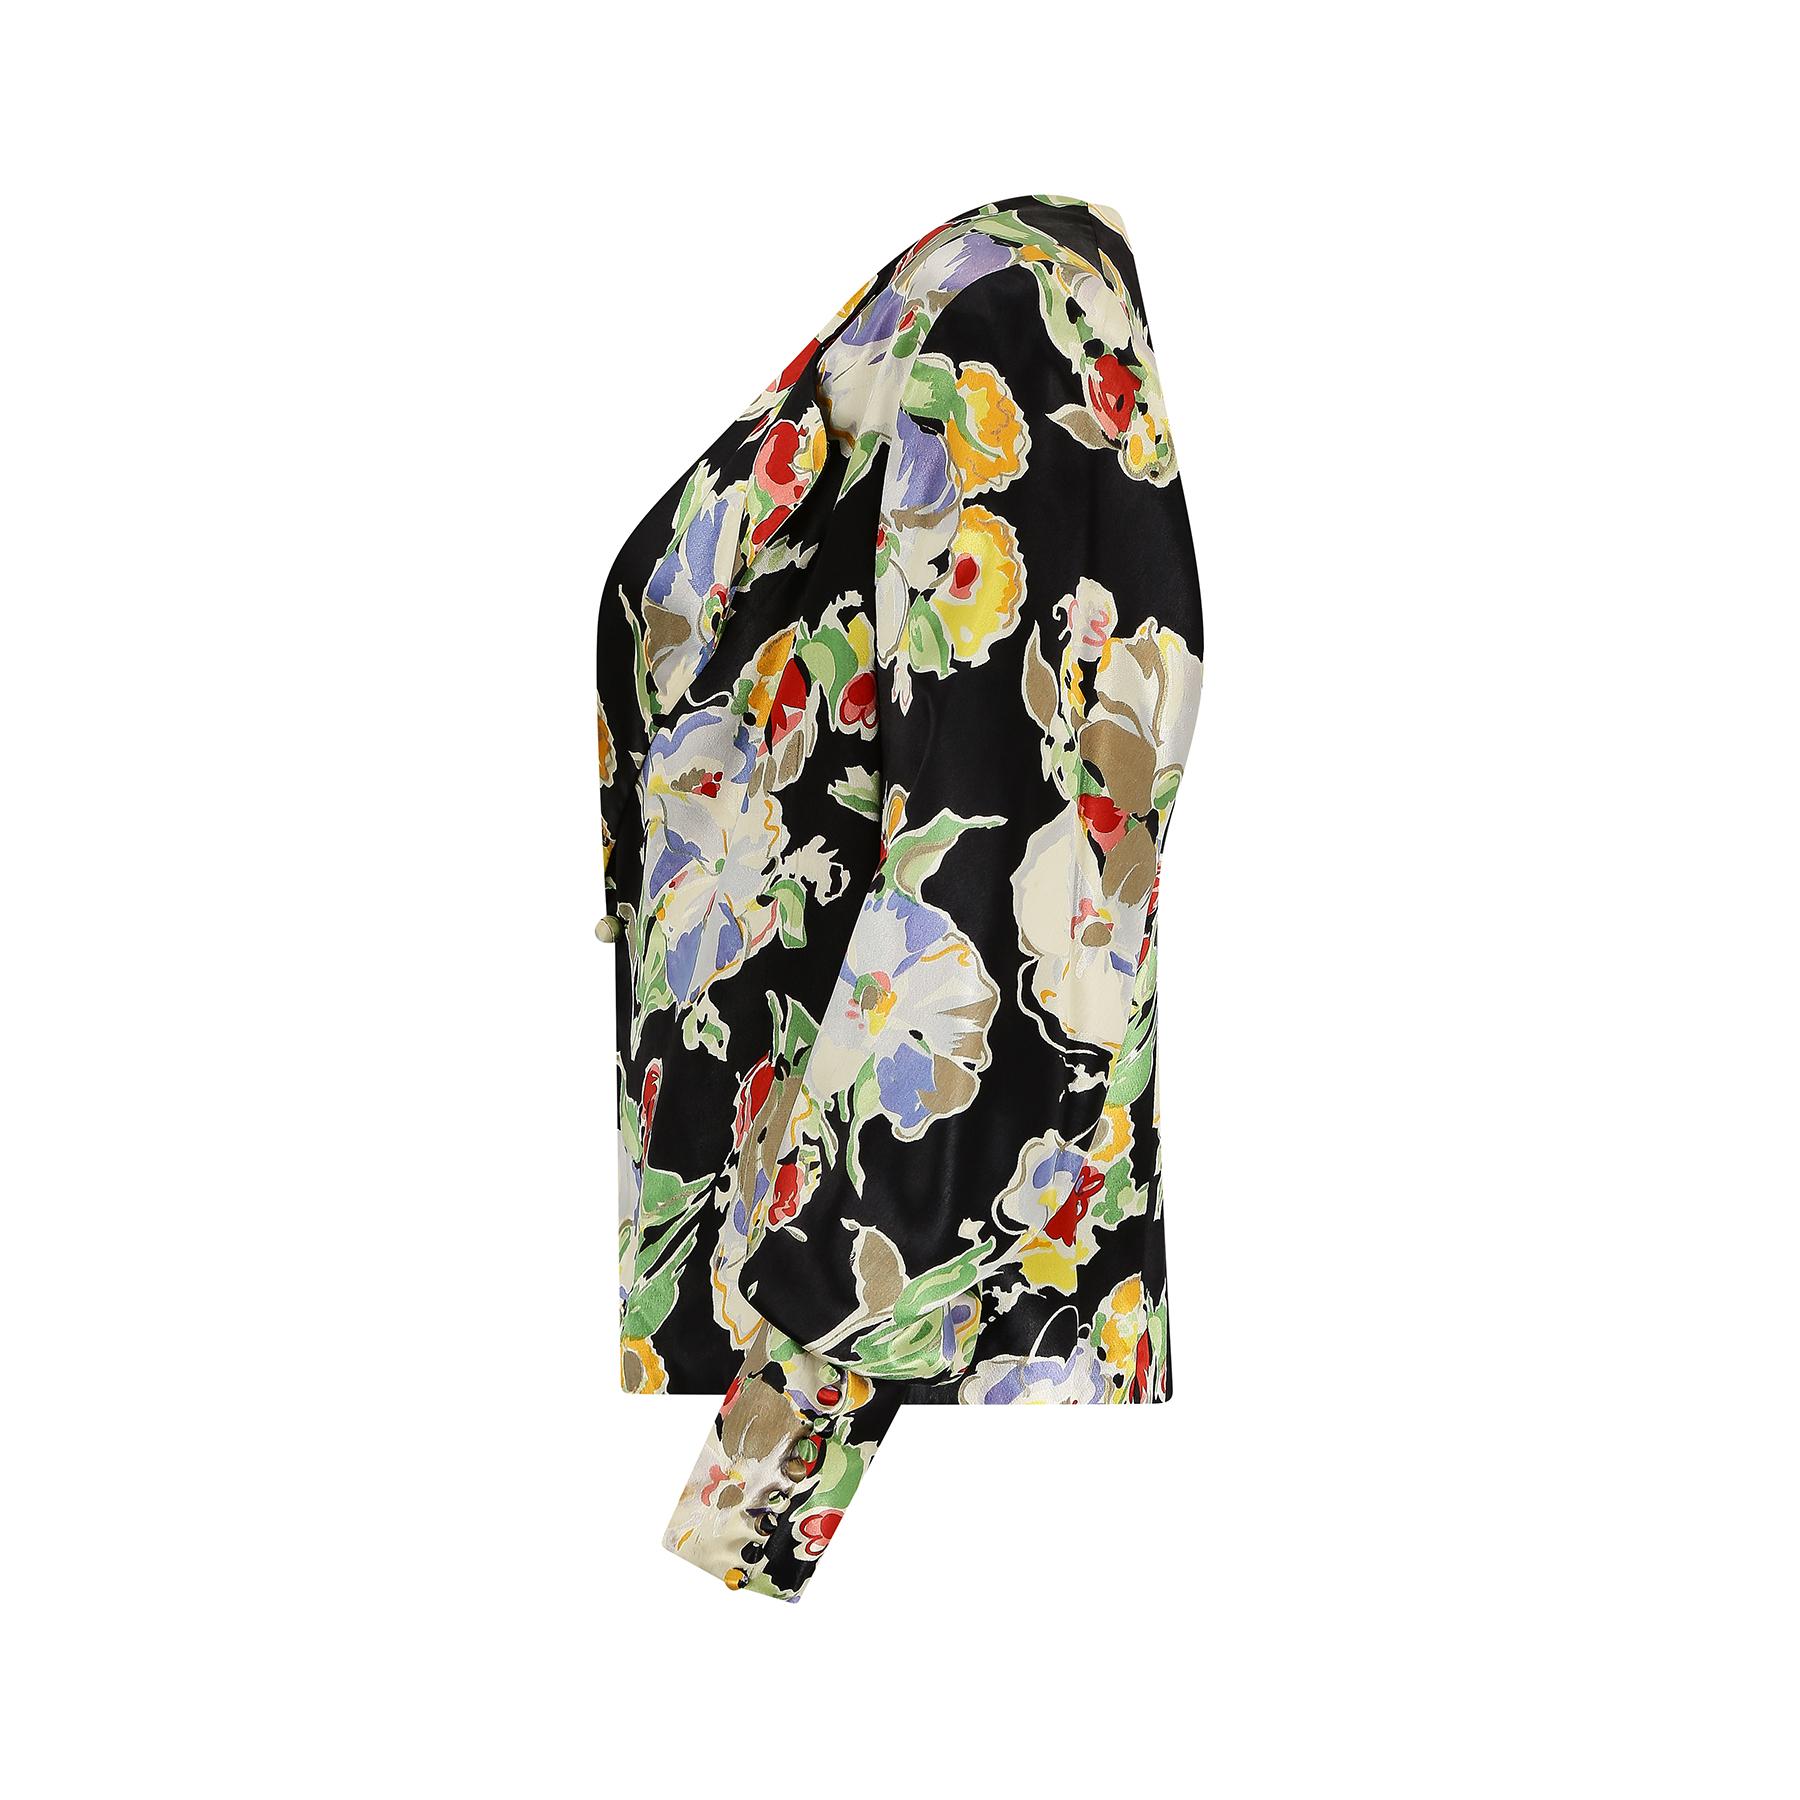 Il s'agit d'une très belle veste des années 1930, époque où les tissus satinés à fleurs étaient le summum de la mode et de la sophistication pour les tenues de dîner et de cocktail. Il s'agit d'une impression vraiment excellente composée d'une gerbe